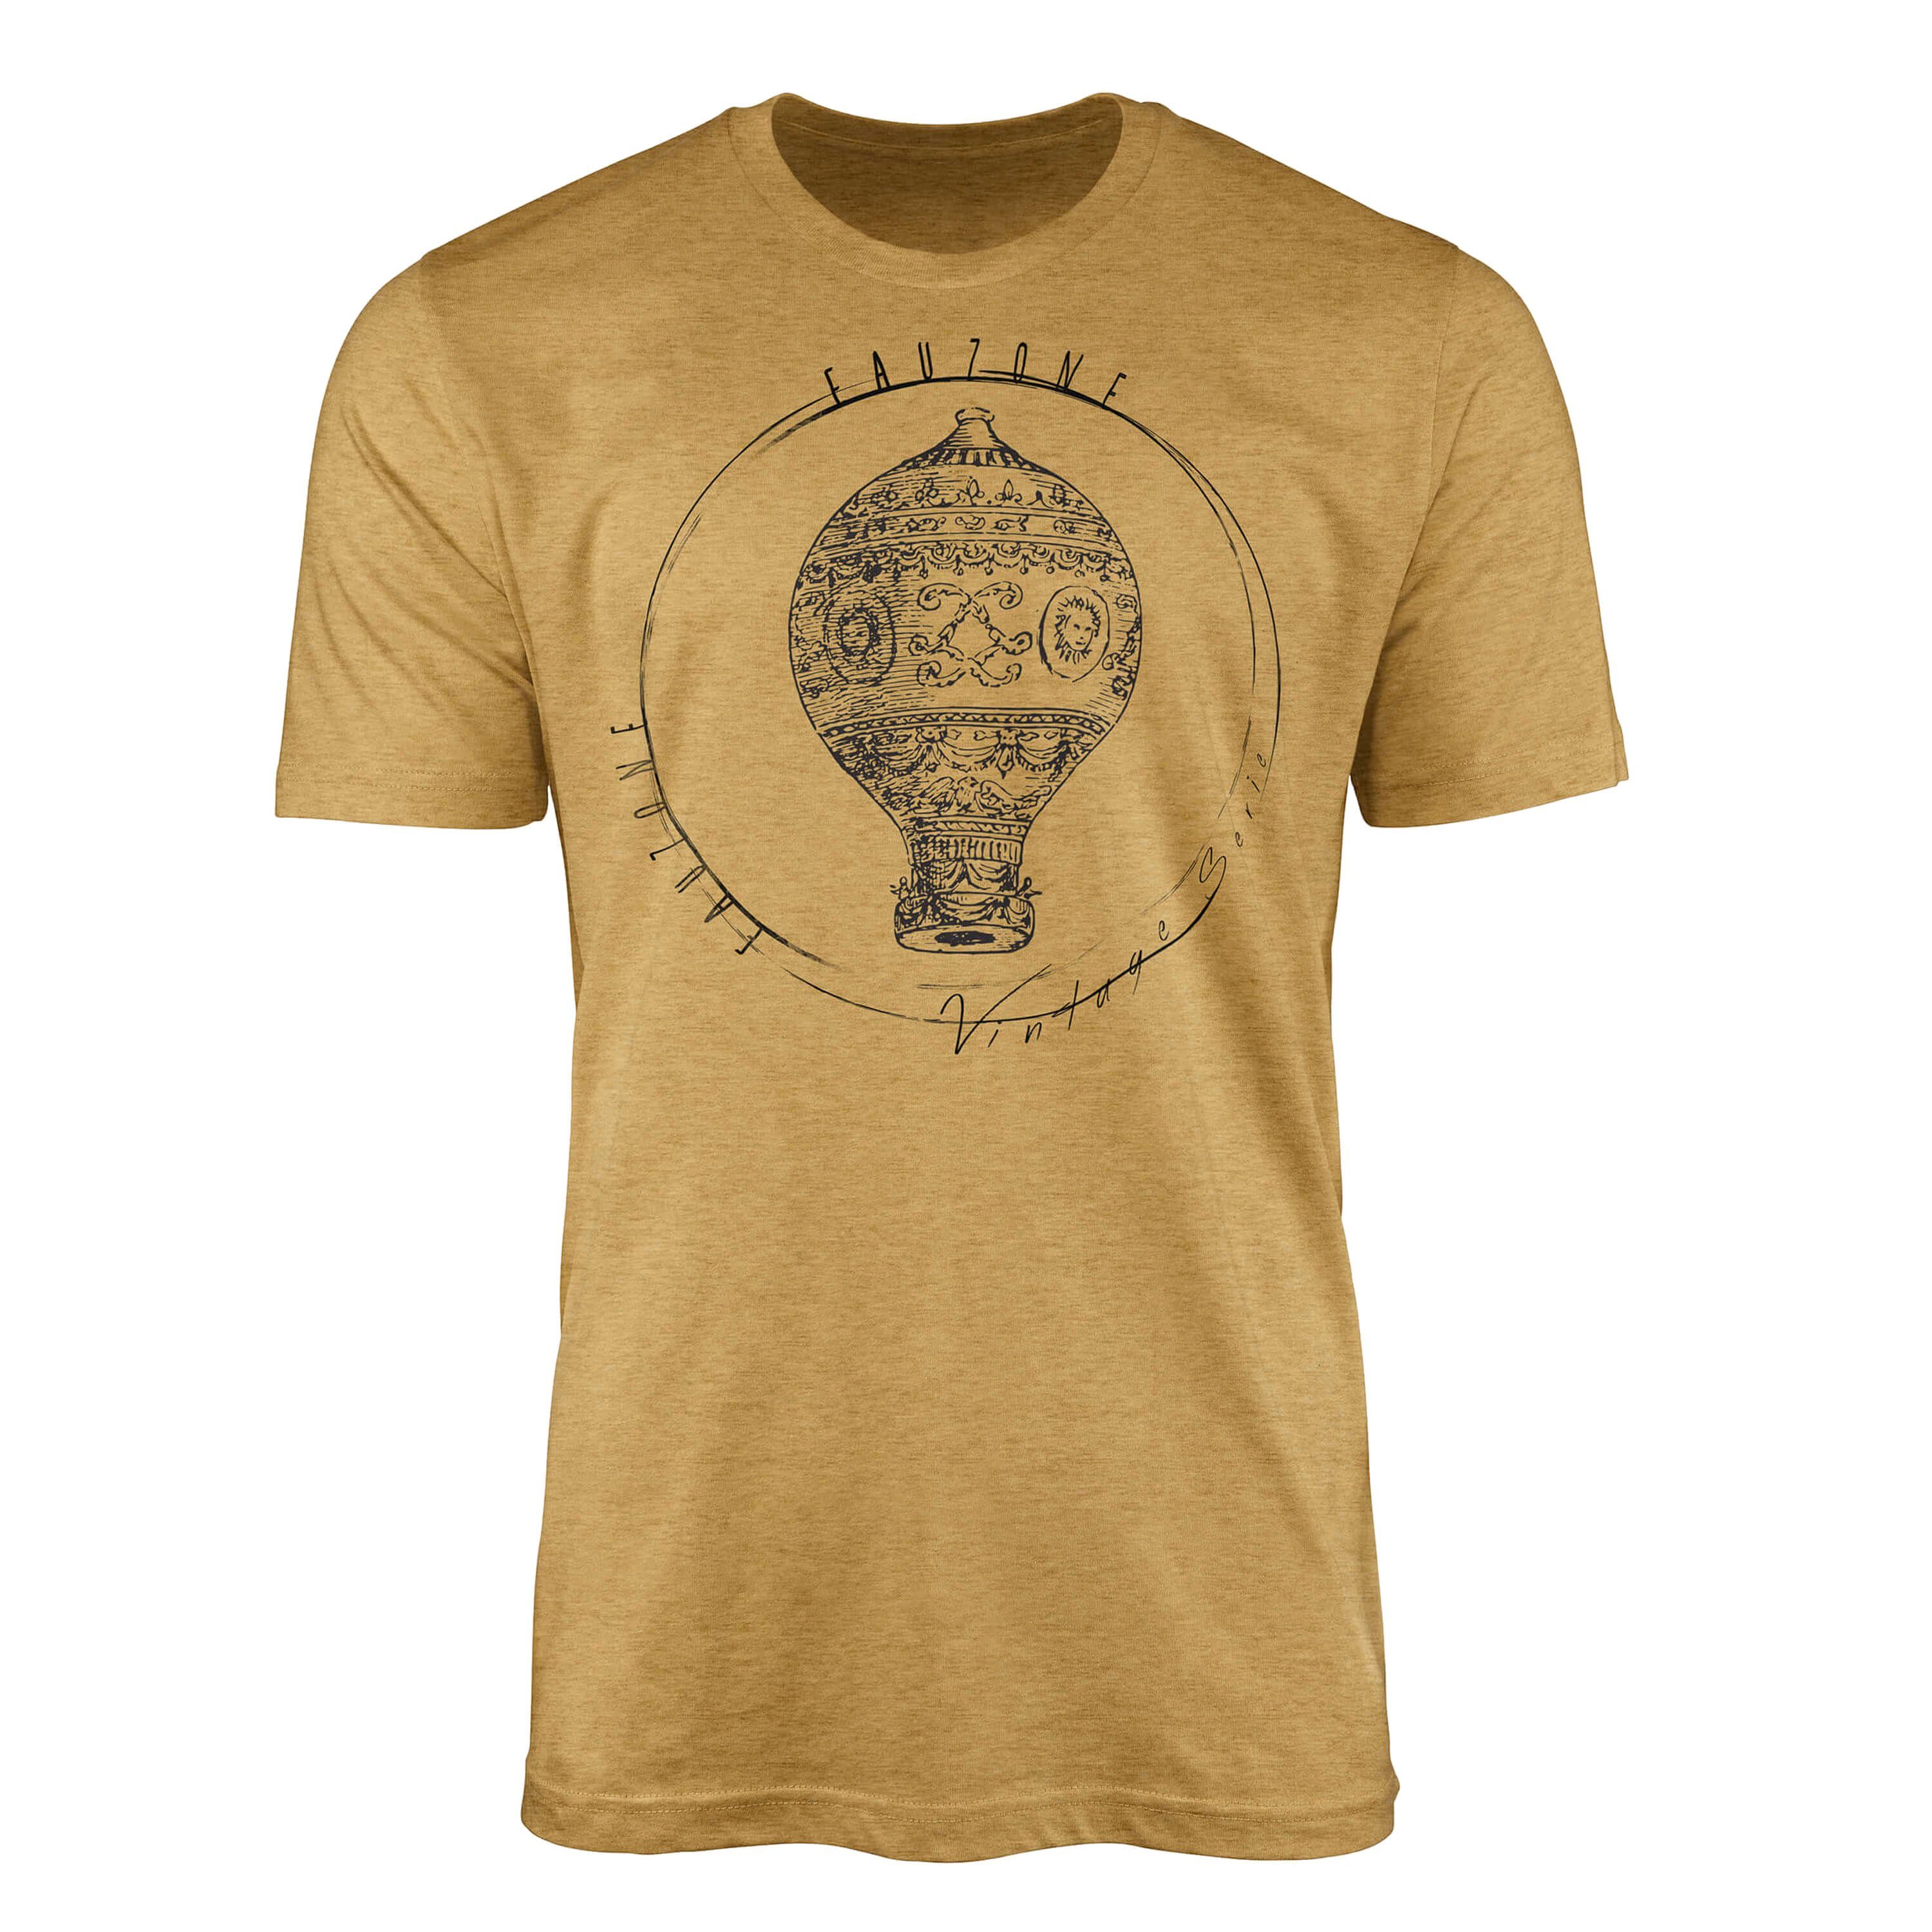 Sinus Art T-Shirt Vintage Herren Antique T-Shirt Heizluftballon Gold